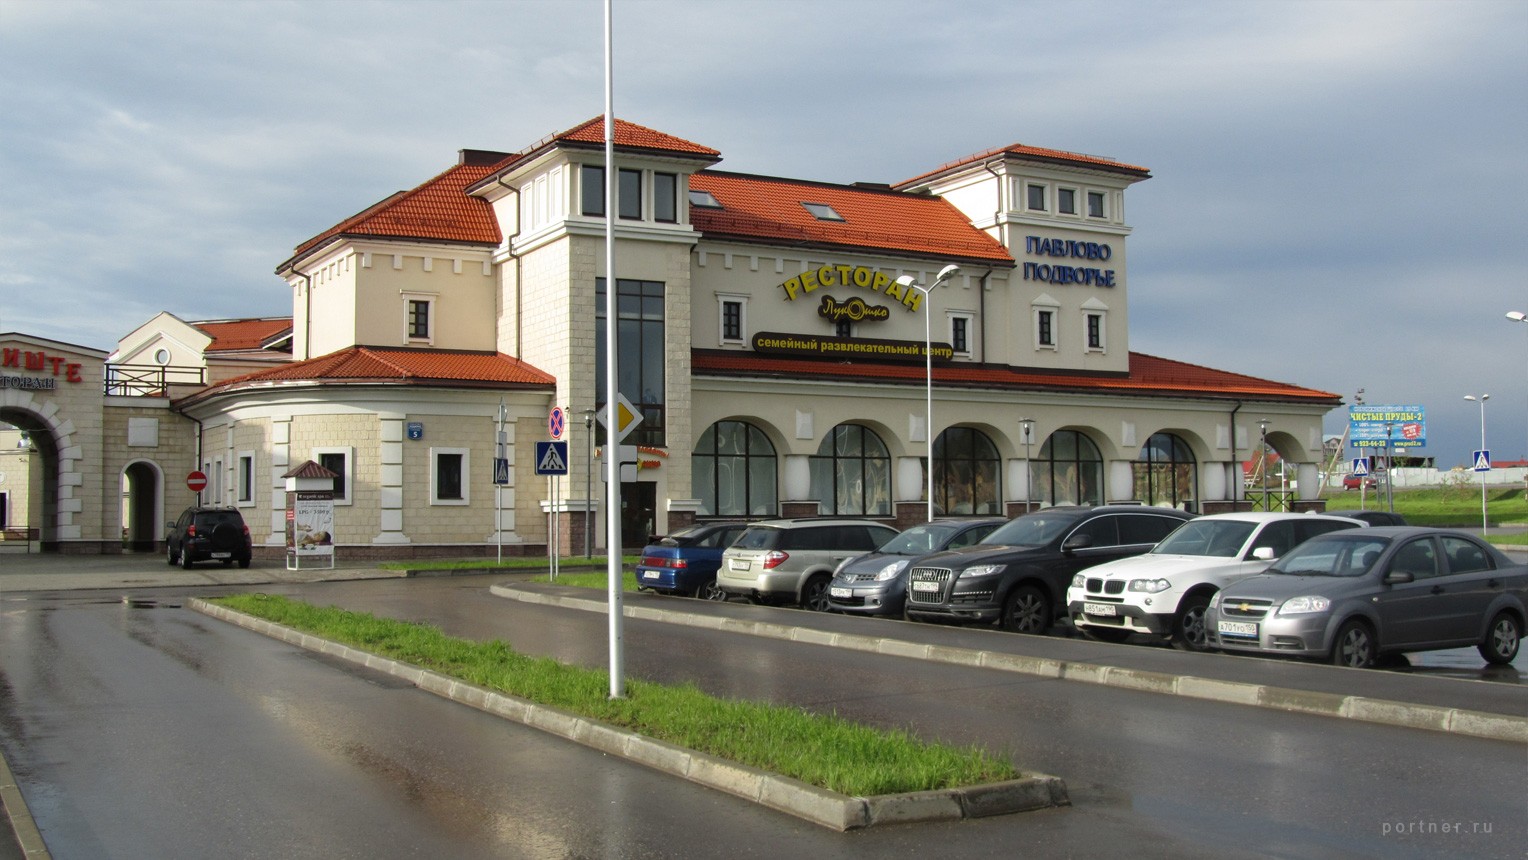 Торговый центр "Павлово Подворье"